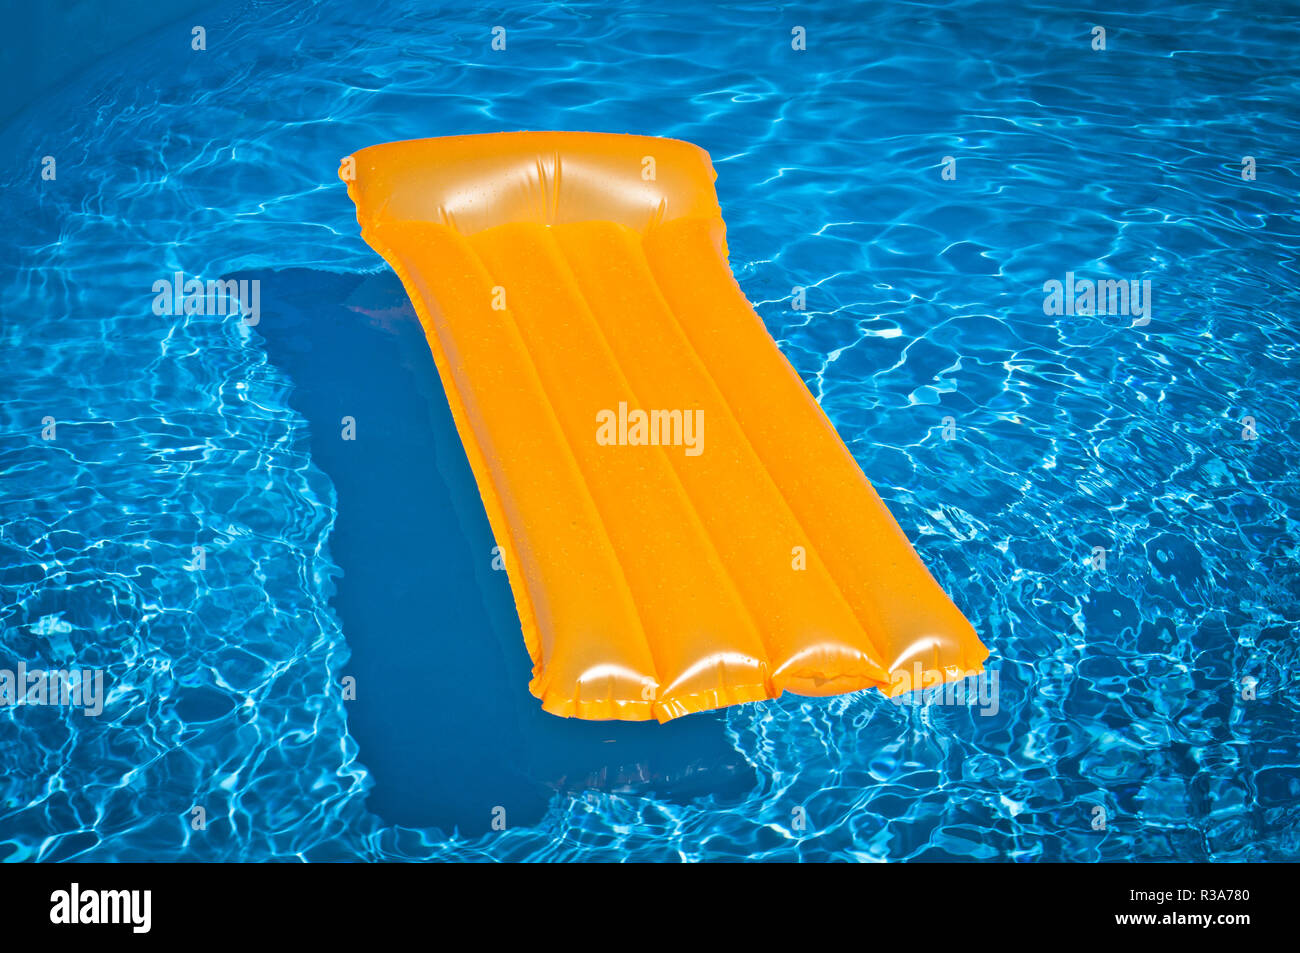 Orange aufblasbare Matratze Schwimmen im Pool Stockfotografie - Alamy